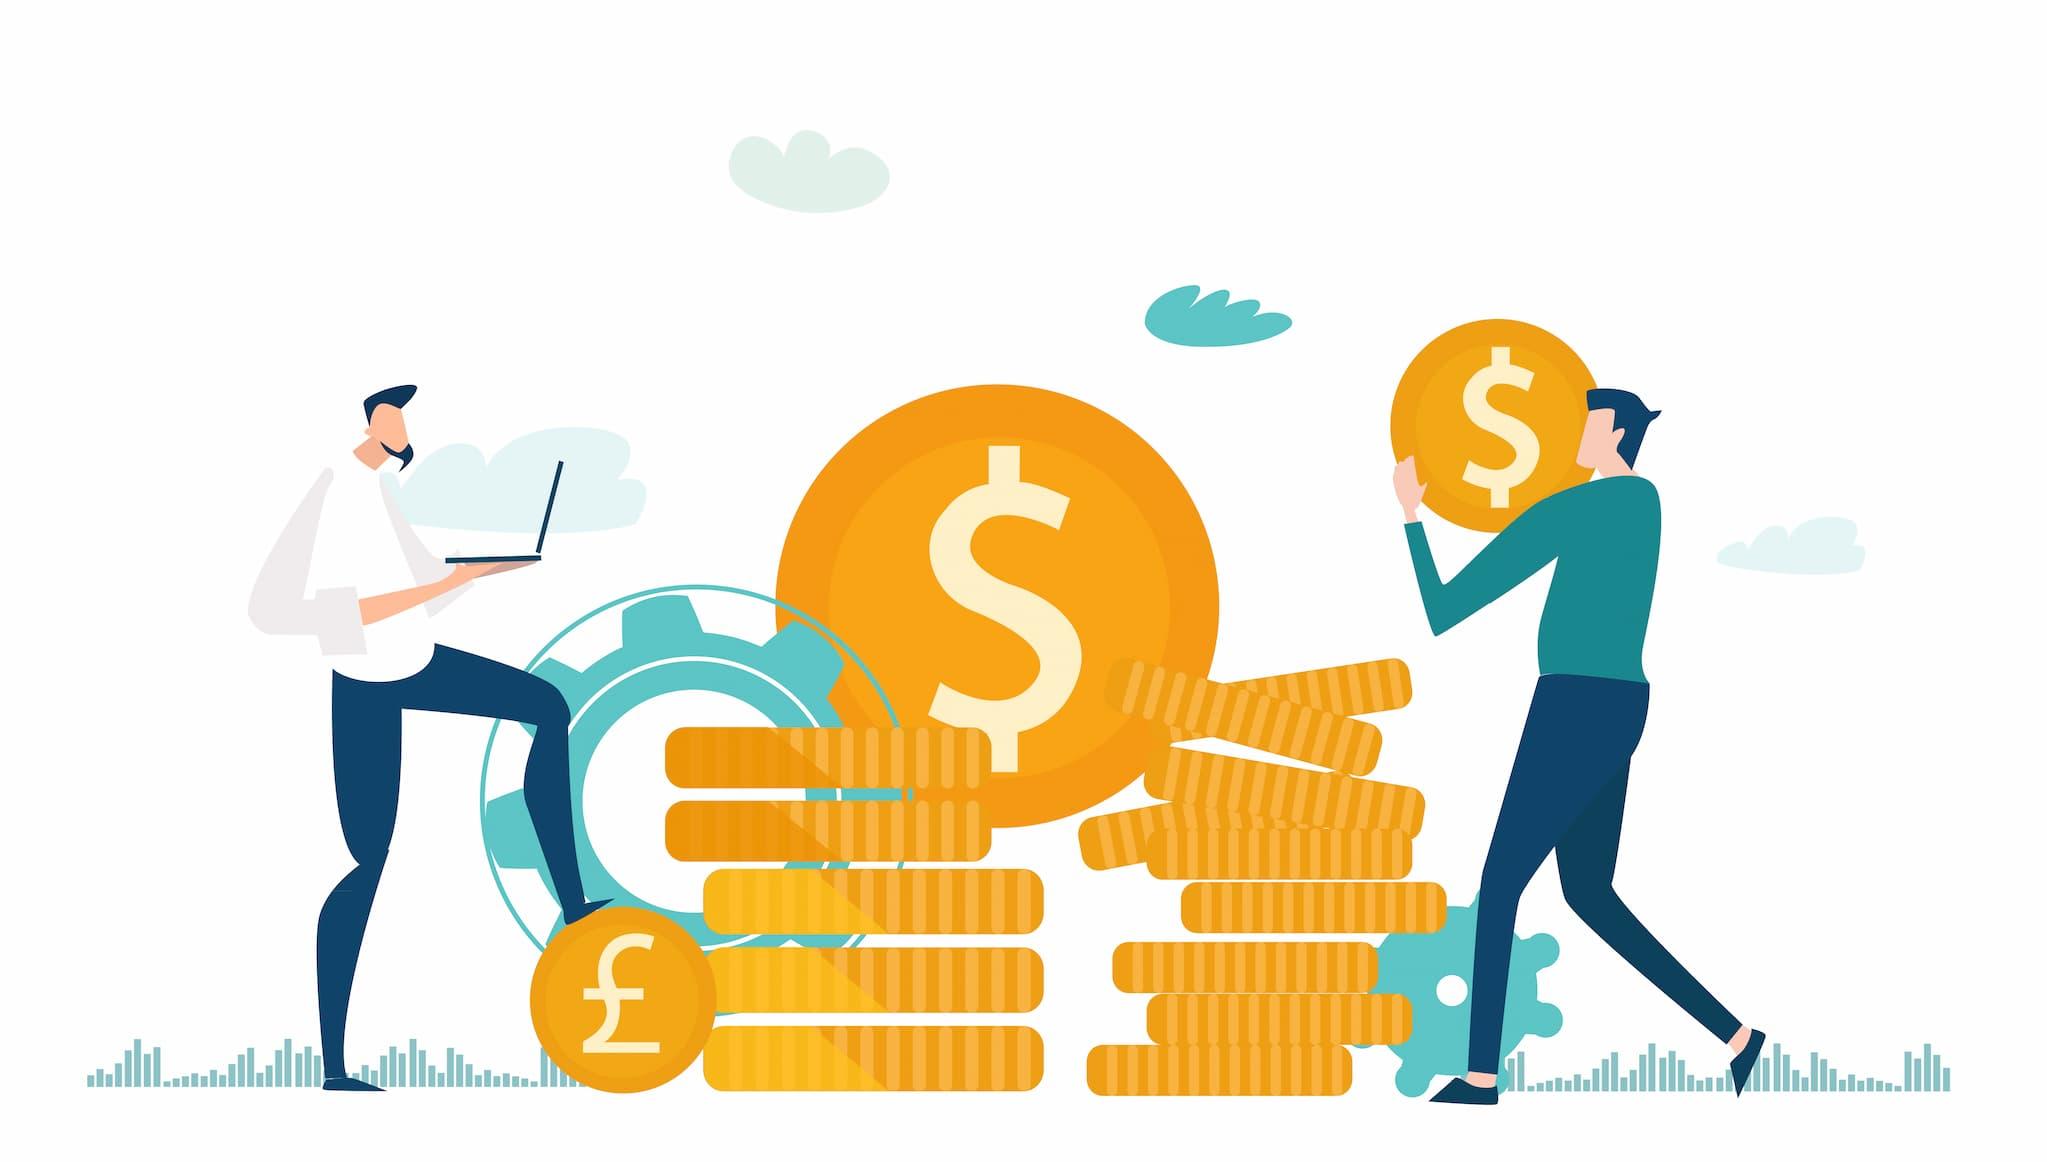 Sebrae Minas - Autofinanciamento: 5 dicas práticas para ajudar sua empresa